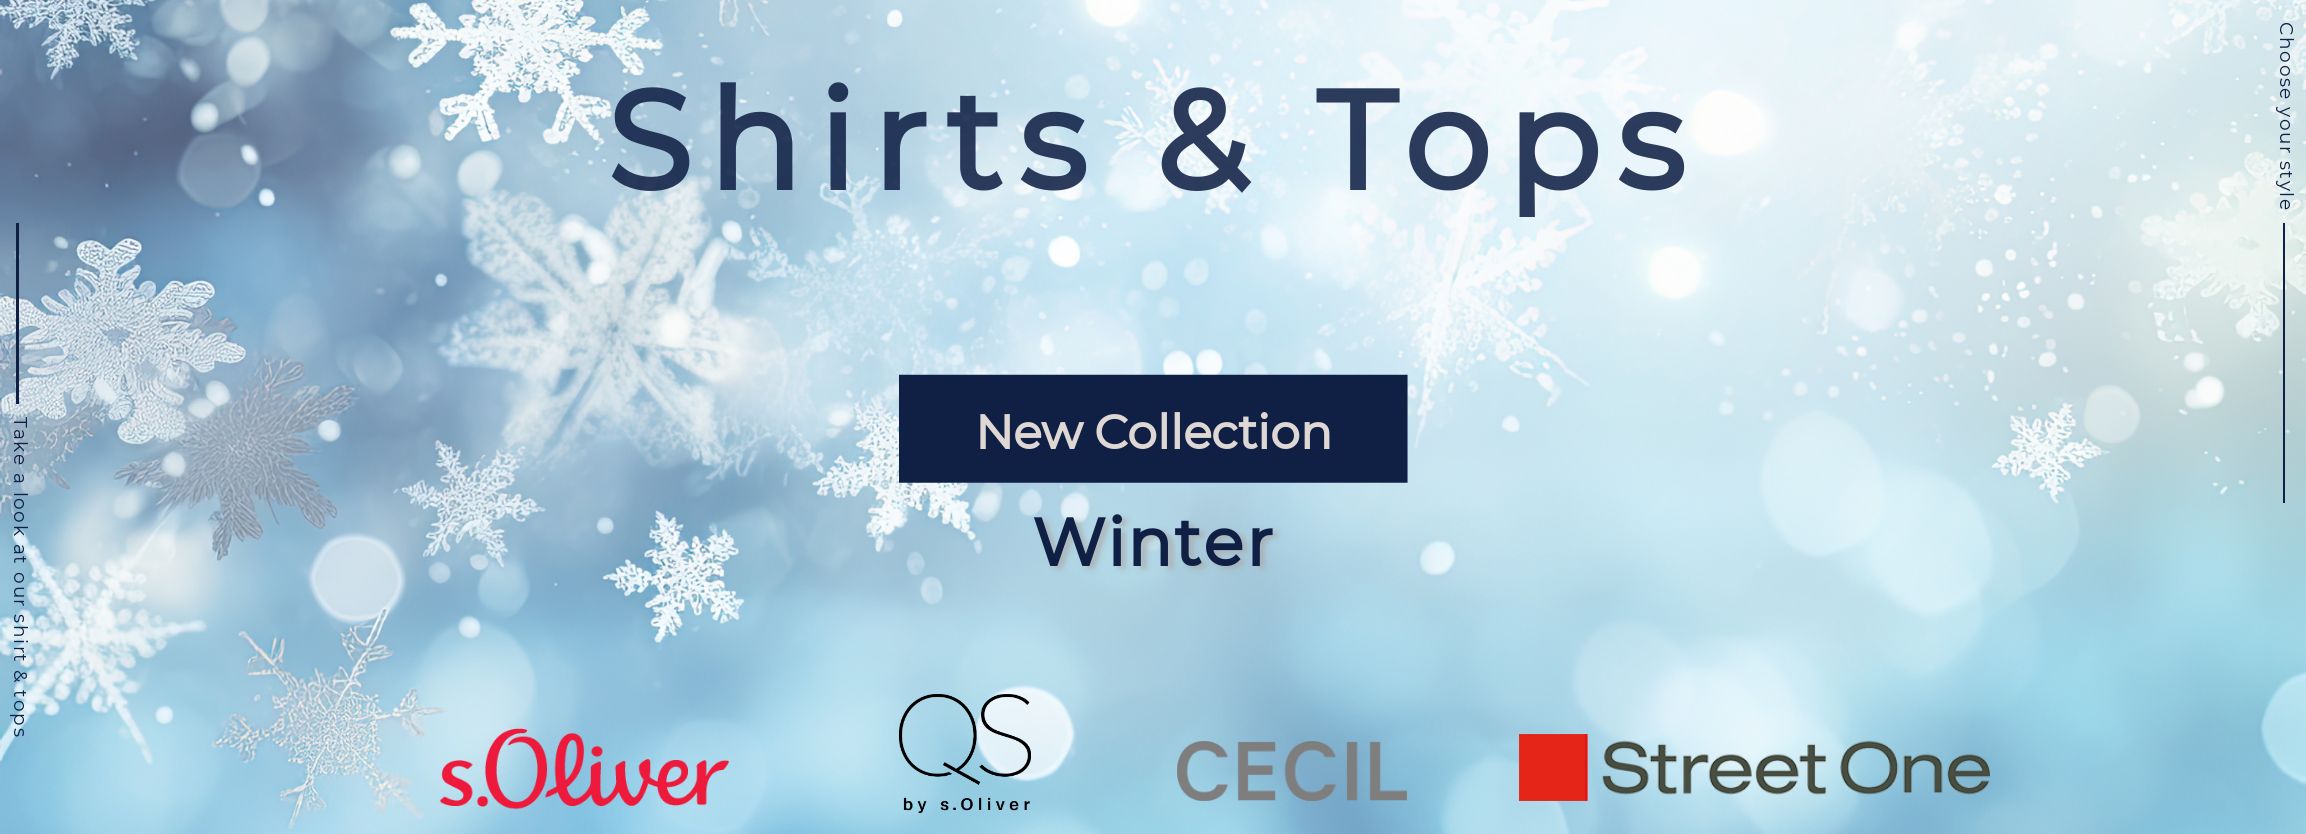 Shirts,Tops und Damenshirts von CECIL und Street One kaufen